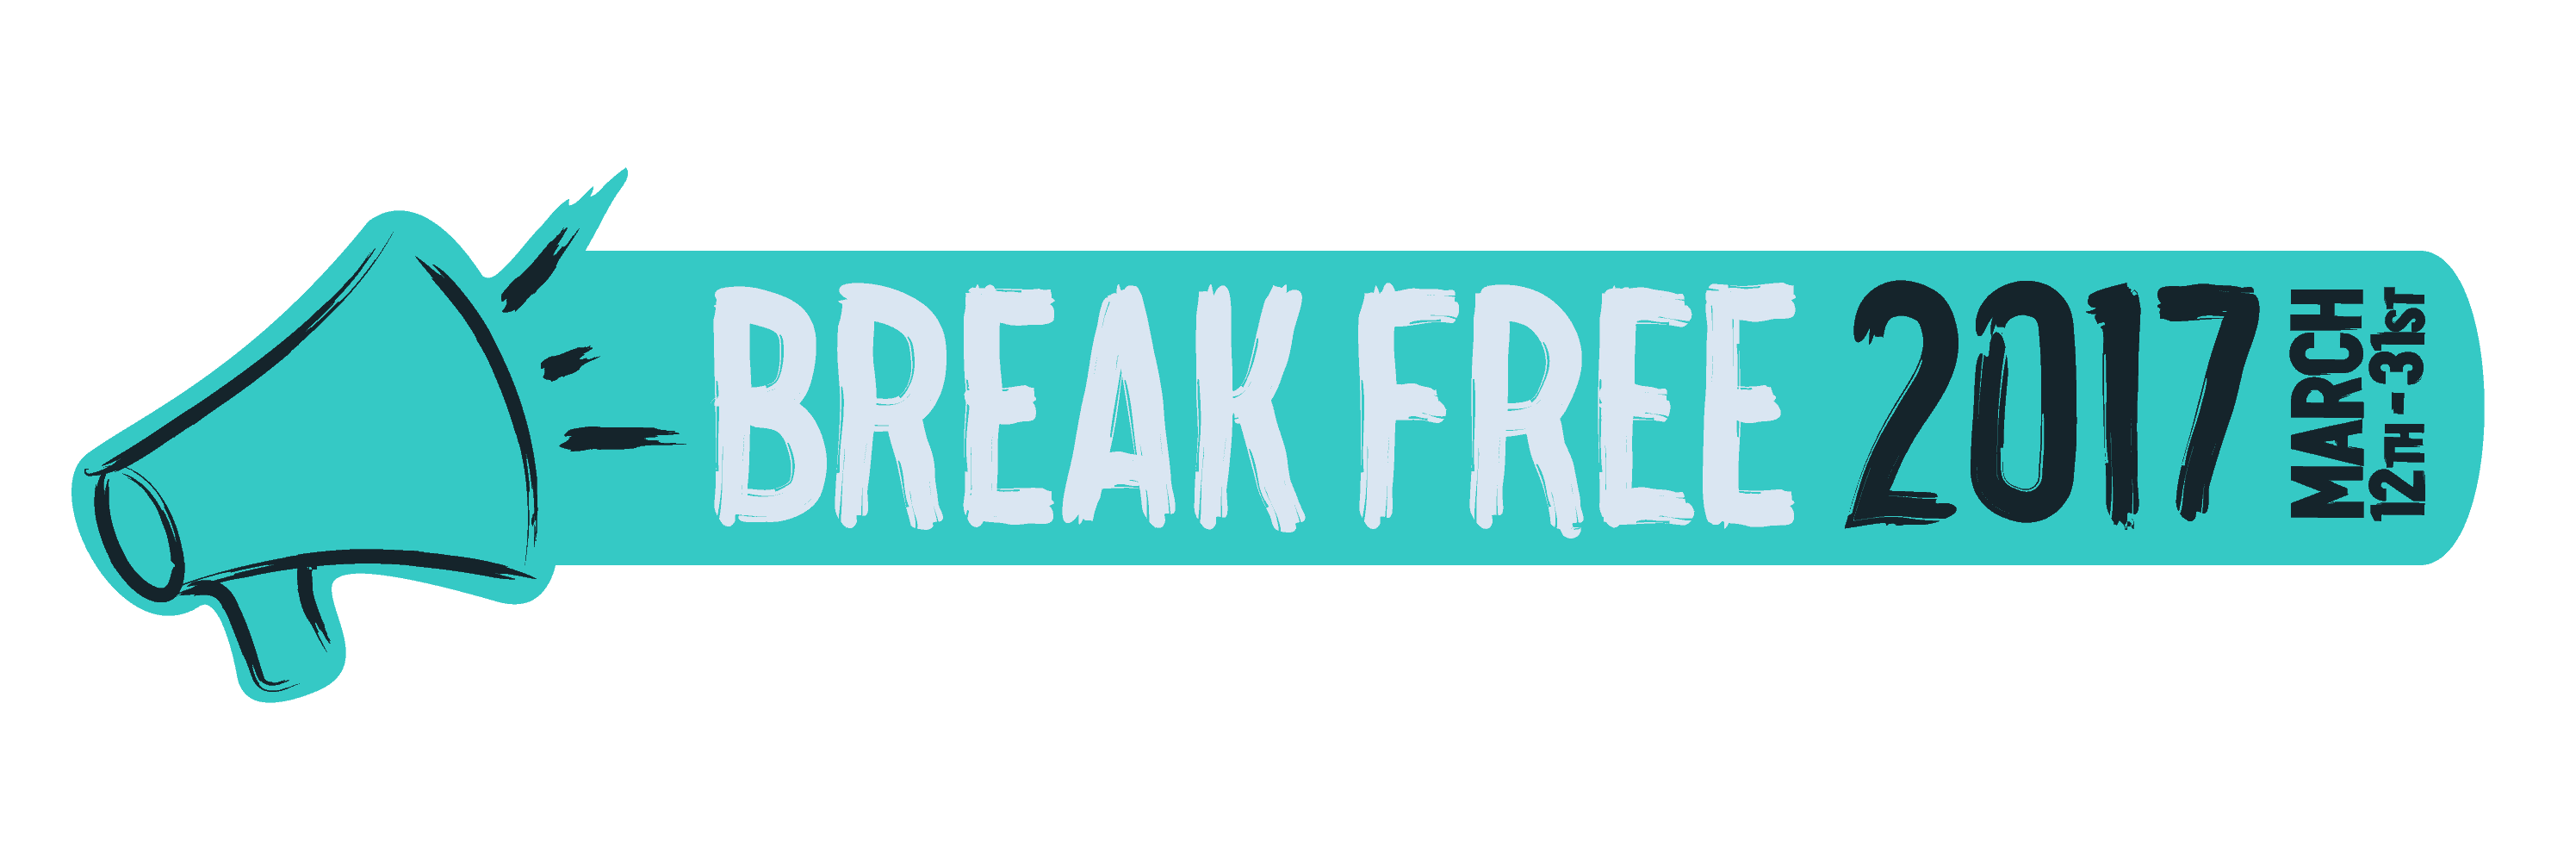 Metadrasi - BREAK FREE 2017 TAG 01